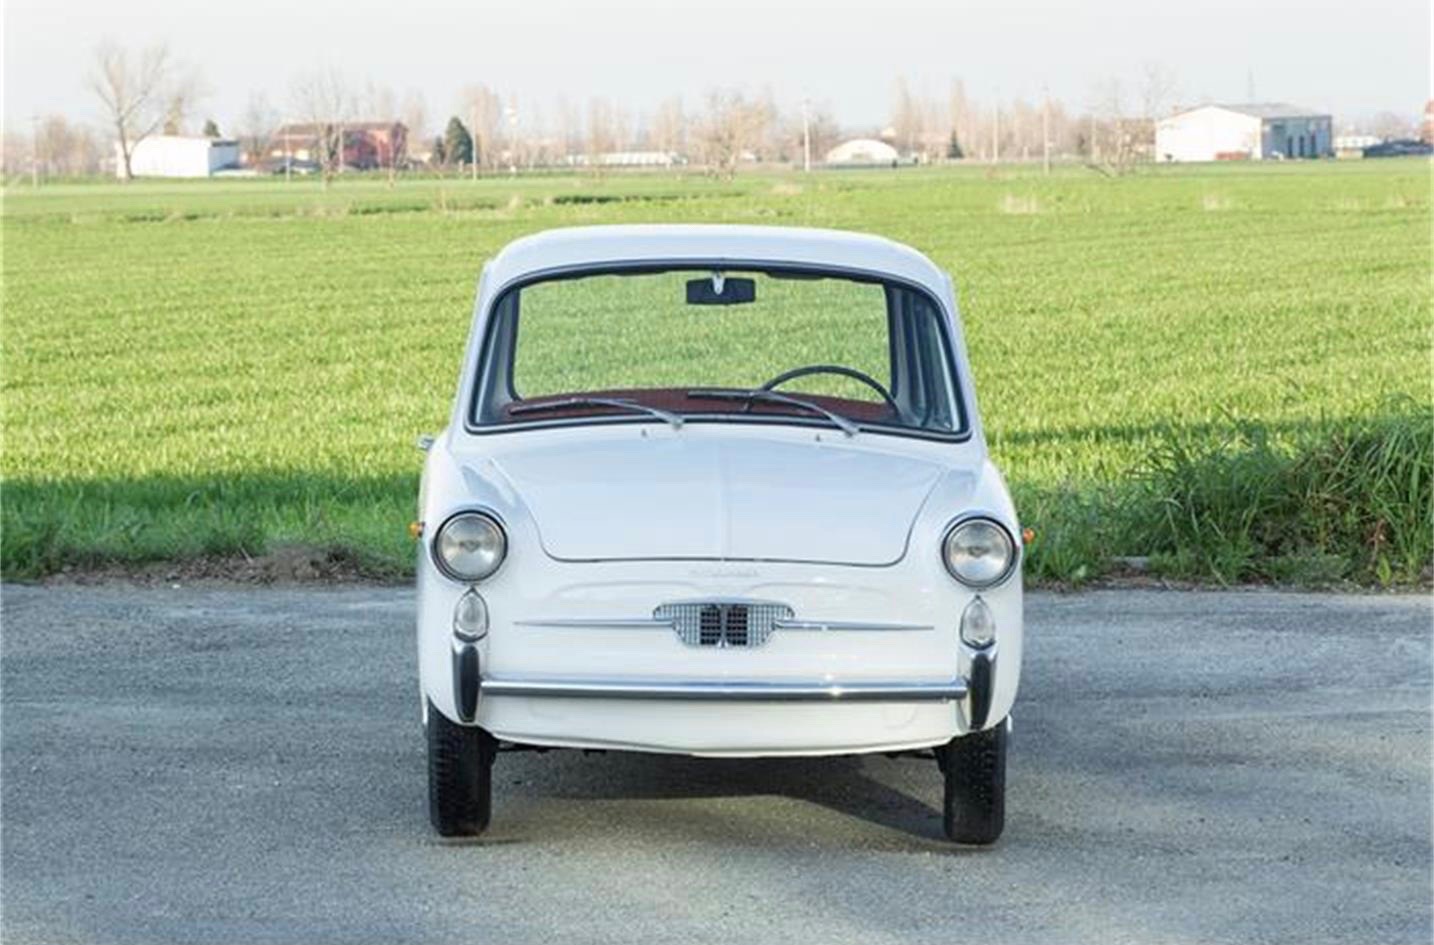 1964 Autobianchi, Italian job: Restored and micro-sized Autobianchi Bianchina, ClassicCars.com Journal